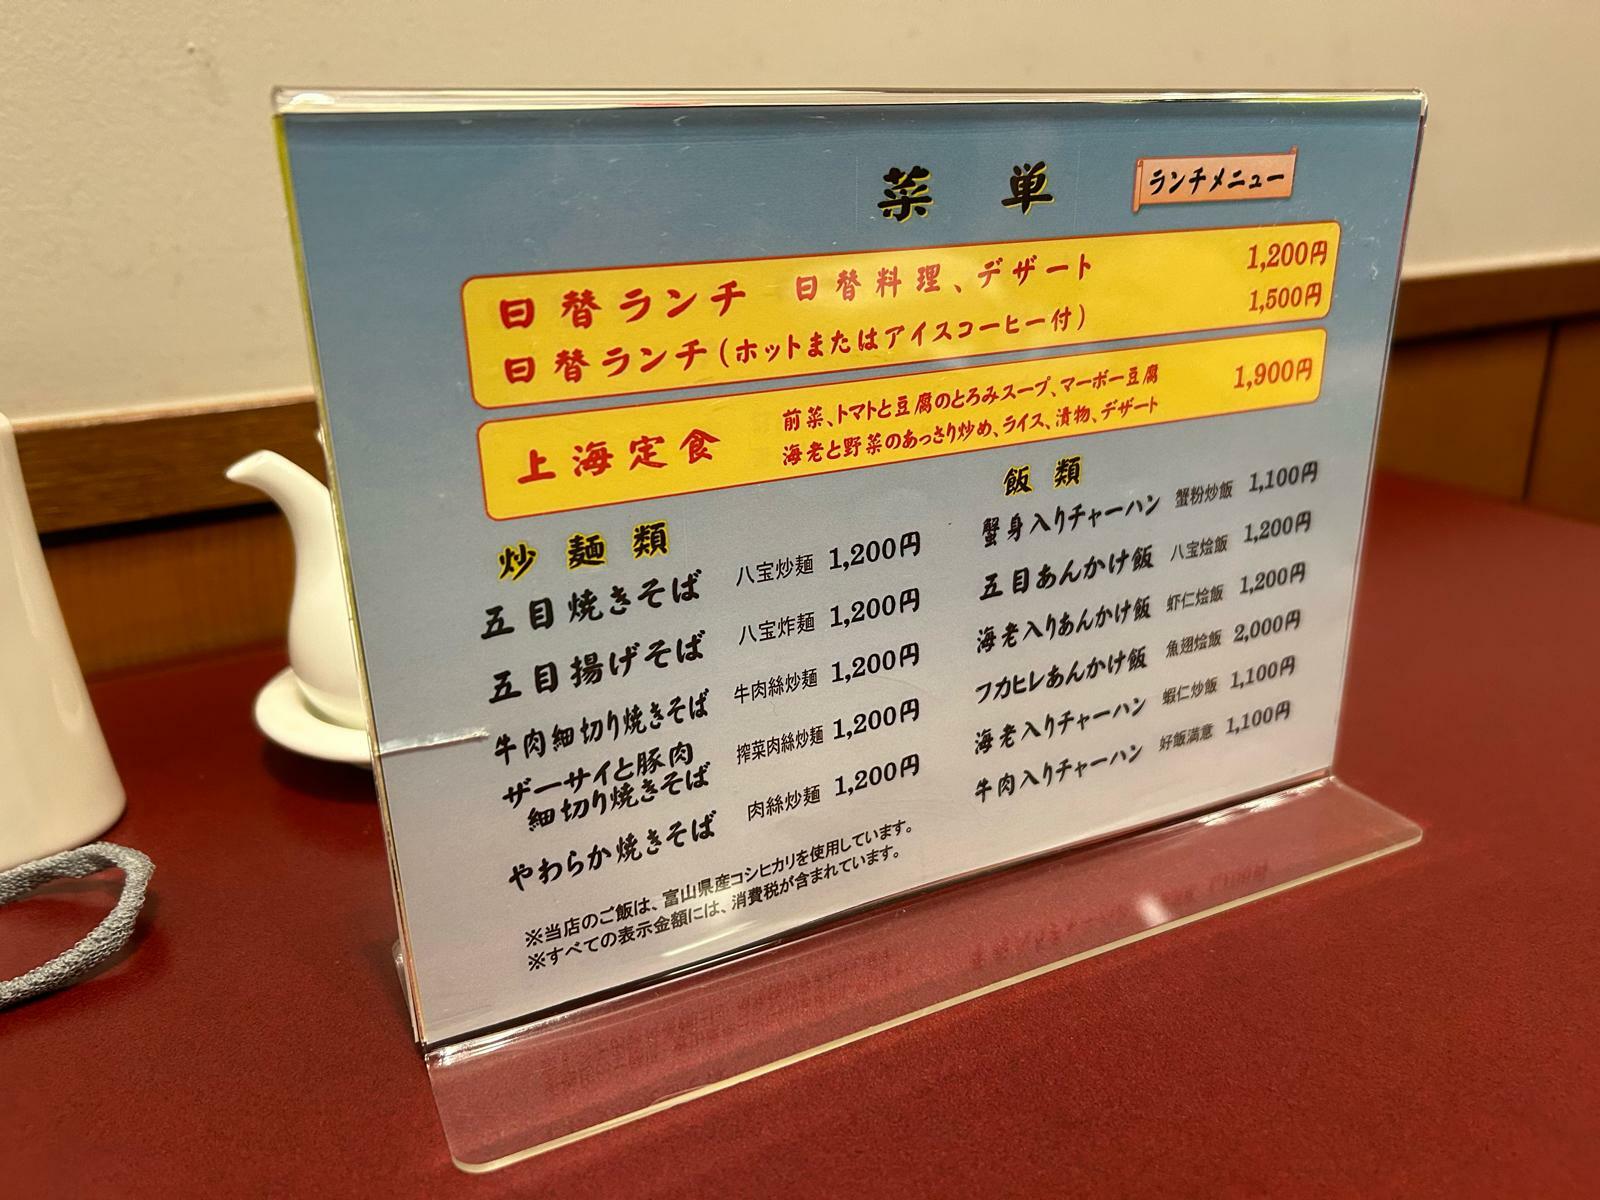 上海定食を注文しているビジネスマンも多くいました